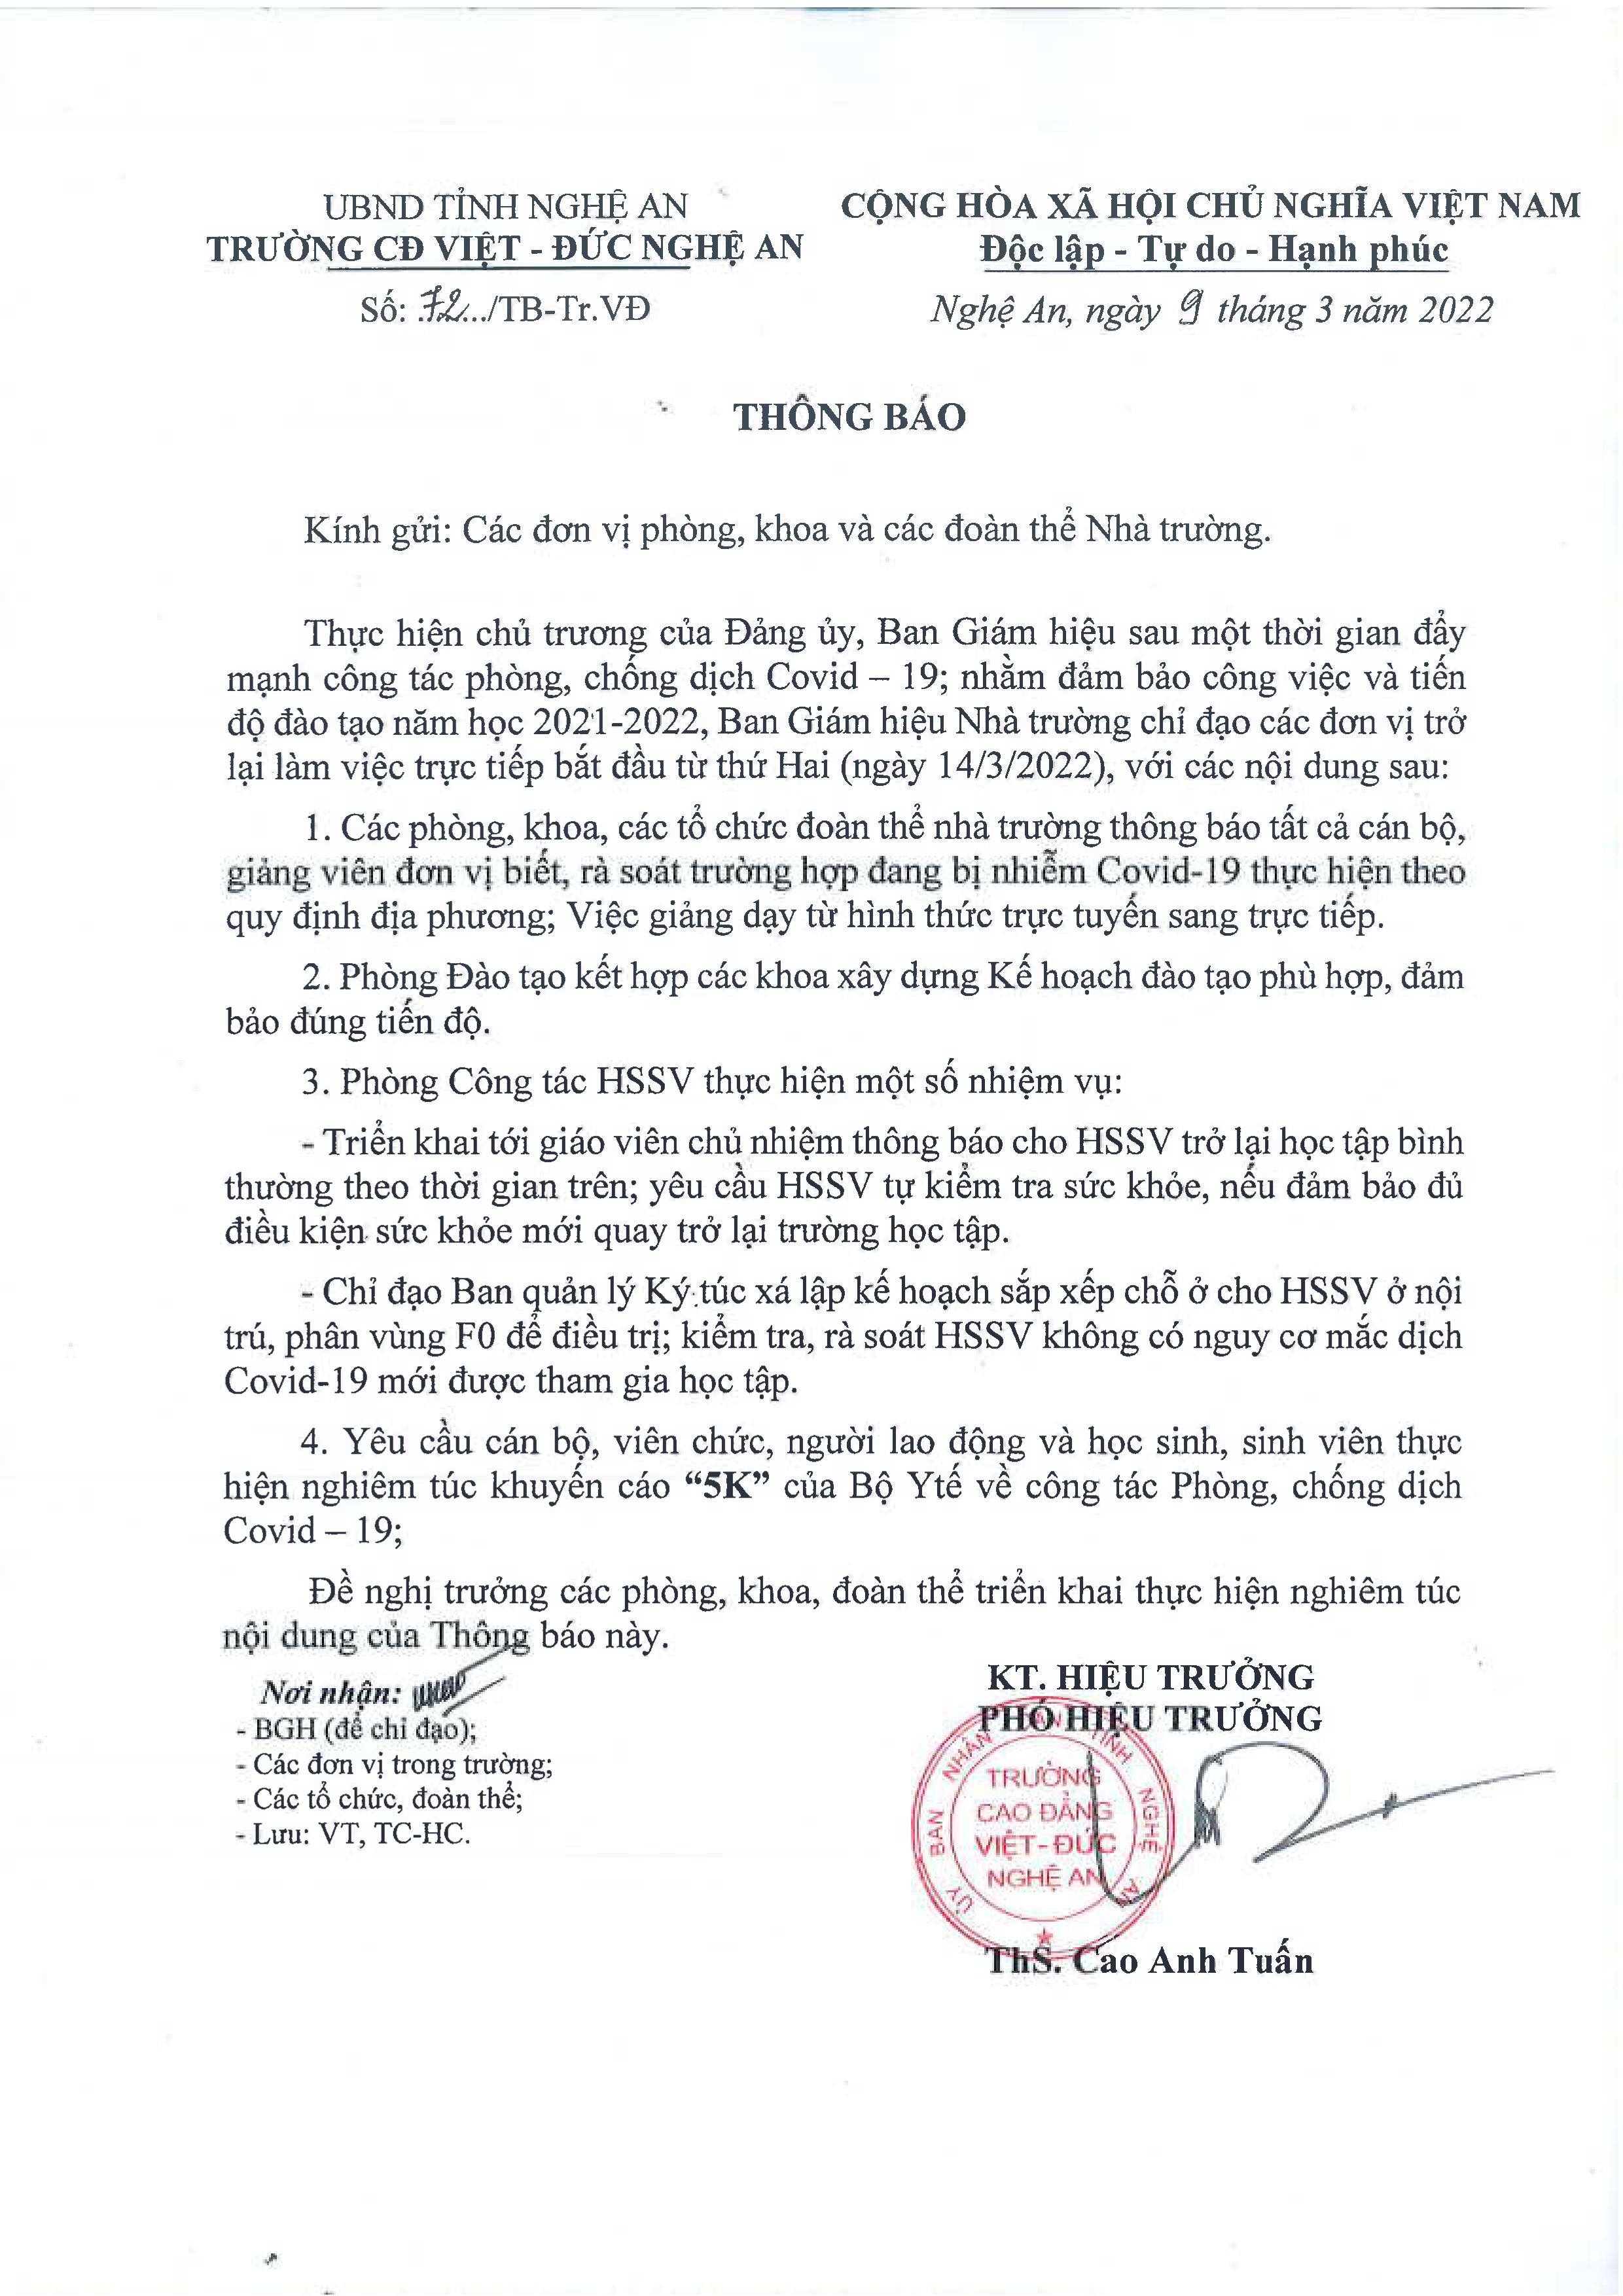 Thông báo số 72/TB-Tr.VĐ ngày 09/3/2022 của Trường Cao đẳng Việt - Đức Nghệ An gửi các đơn vị phòng, khoa và các đoàn thể Nhà trường